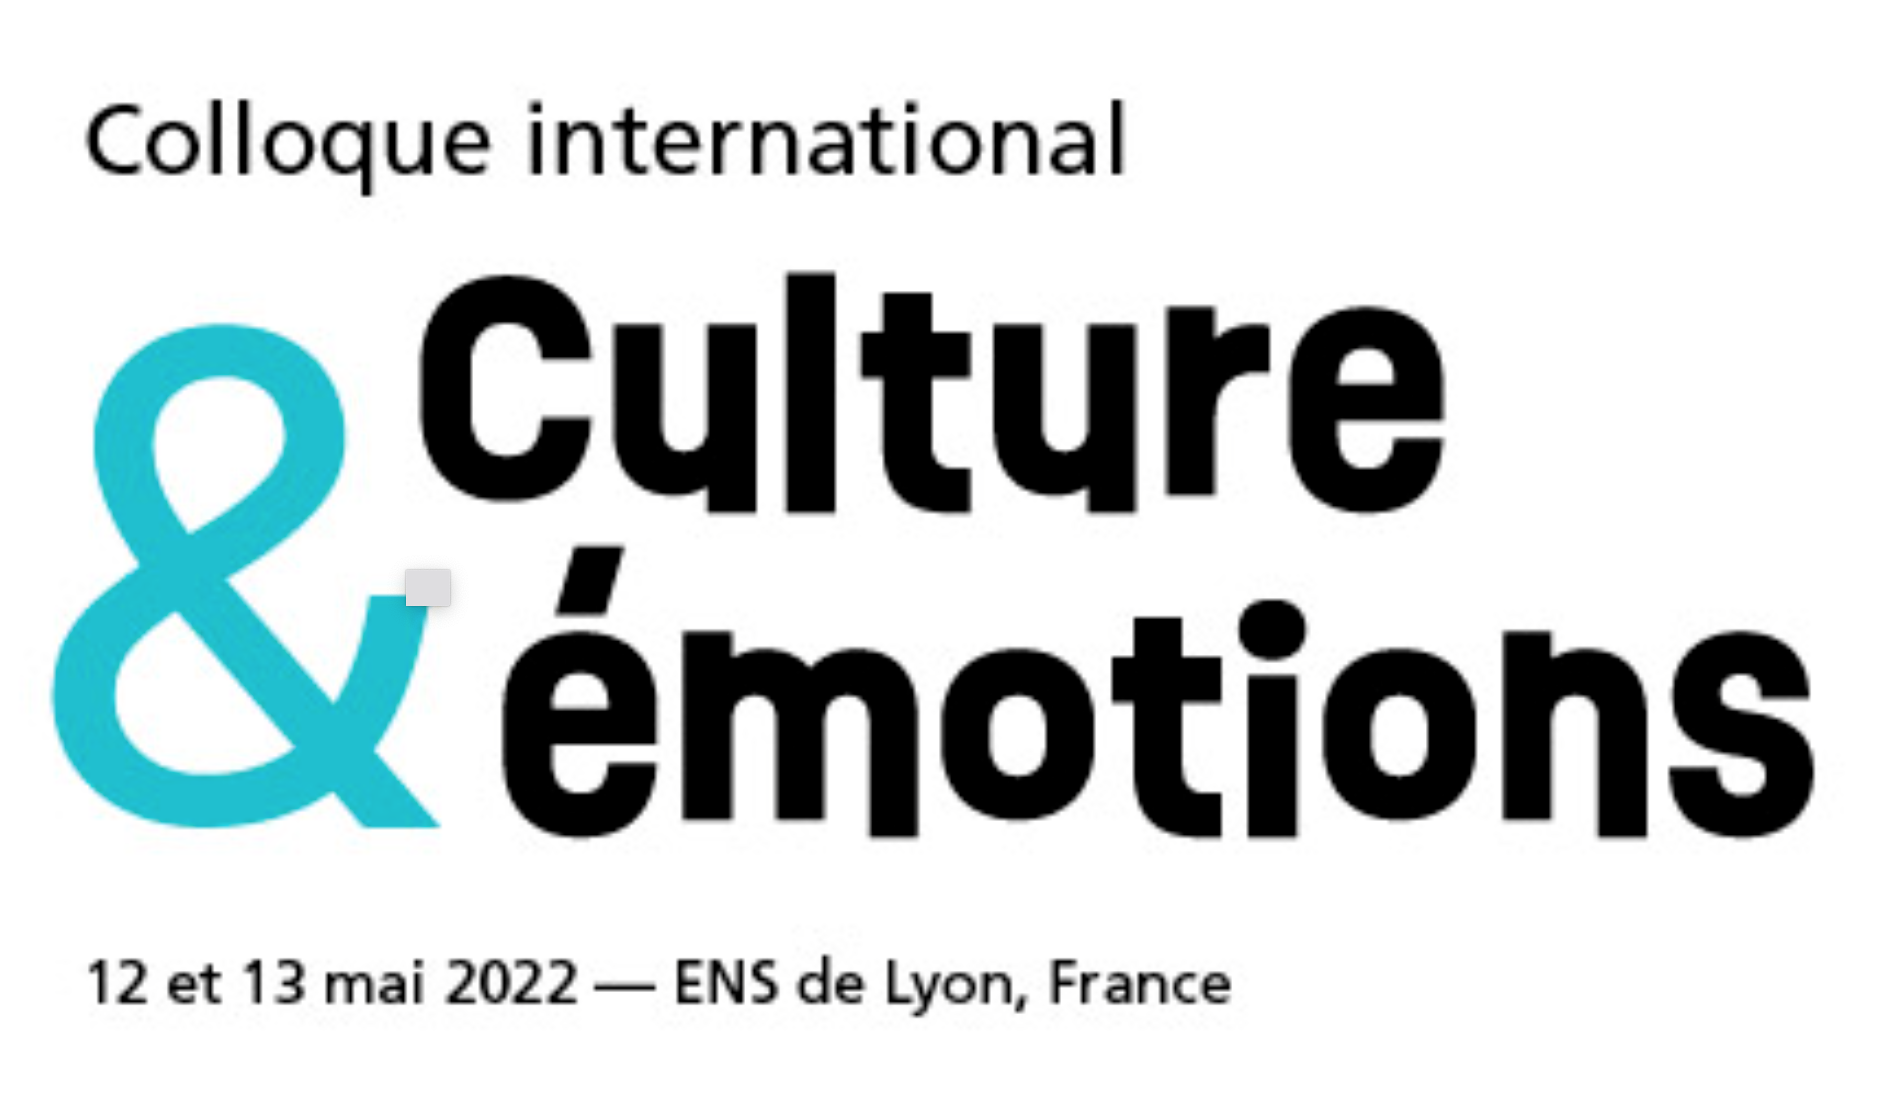 13 mai 2022, intervention d'Alain Quemin au colloque "Culture et Emotions" organisé à l'ENS de Lyon